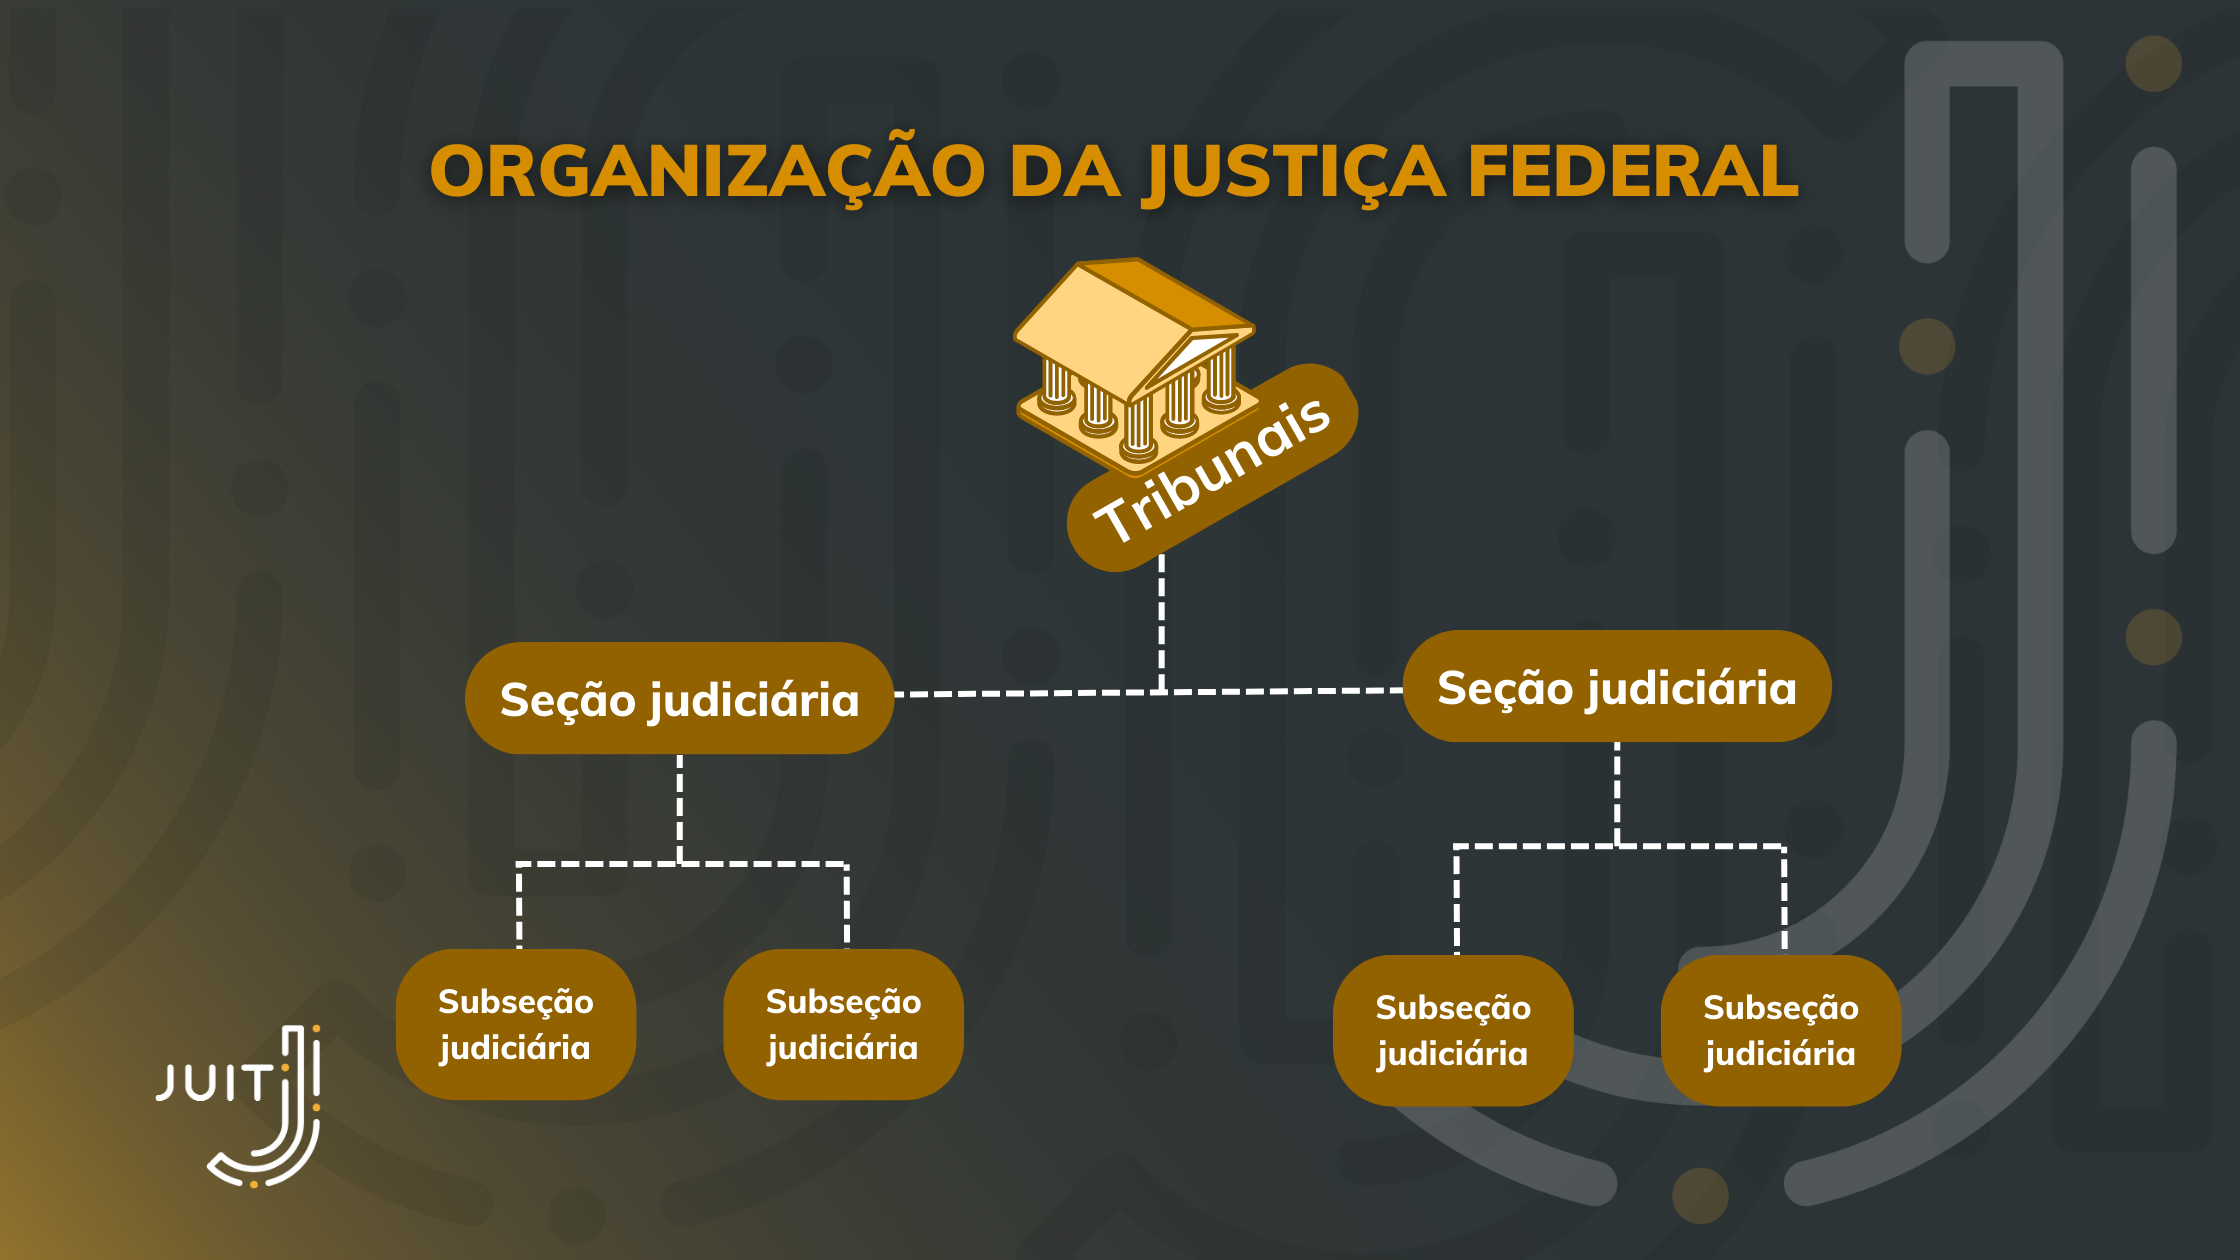 Organização da Justiça Federal em tribunais, seções e subseções judiciárias